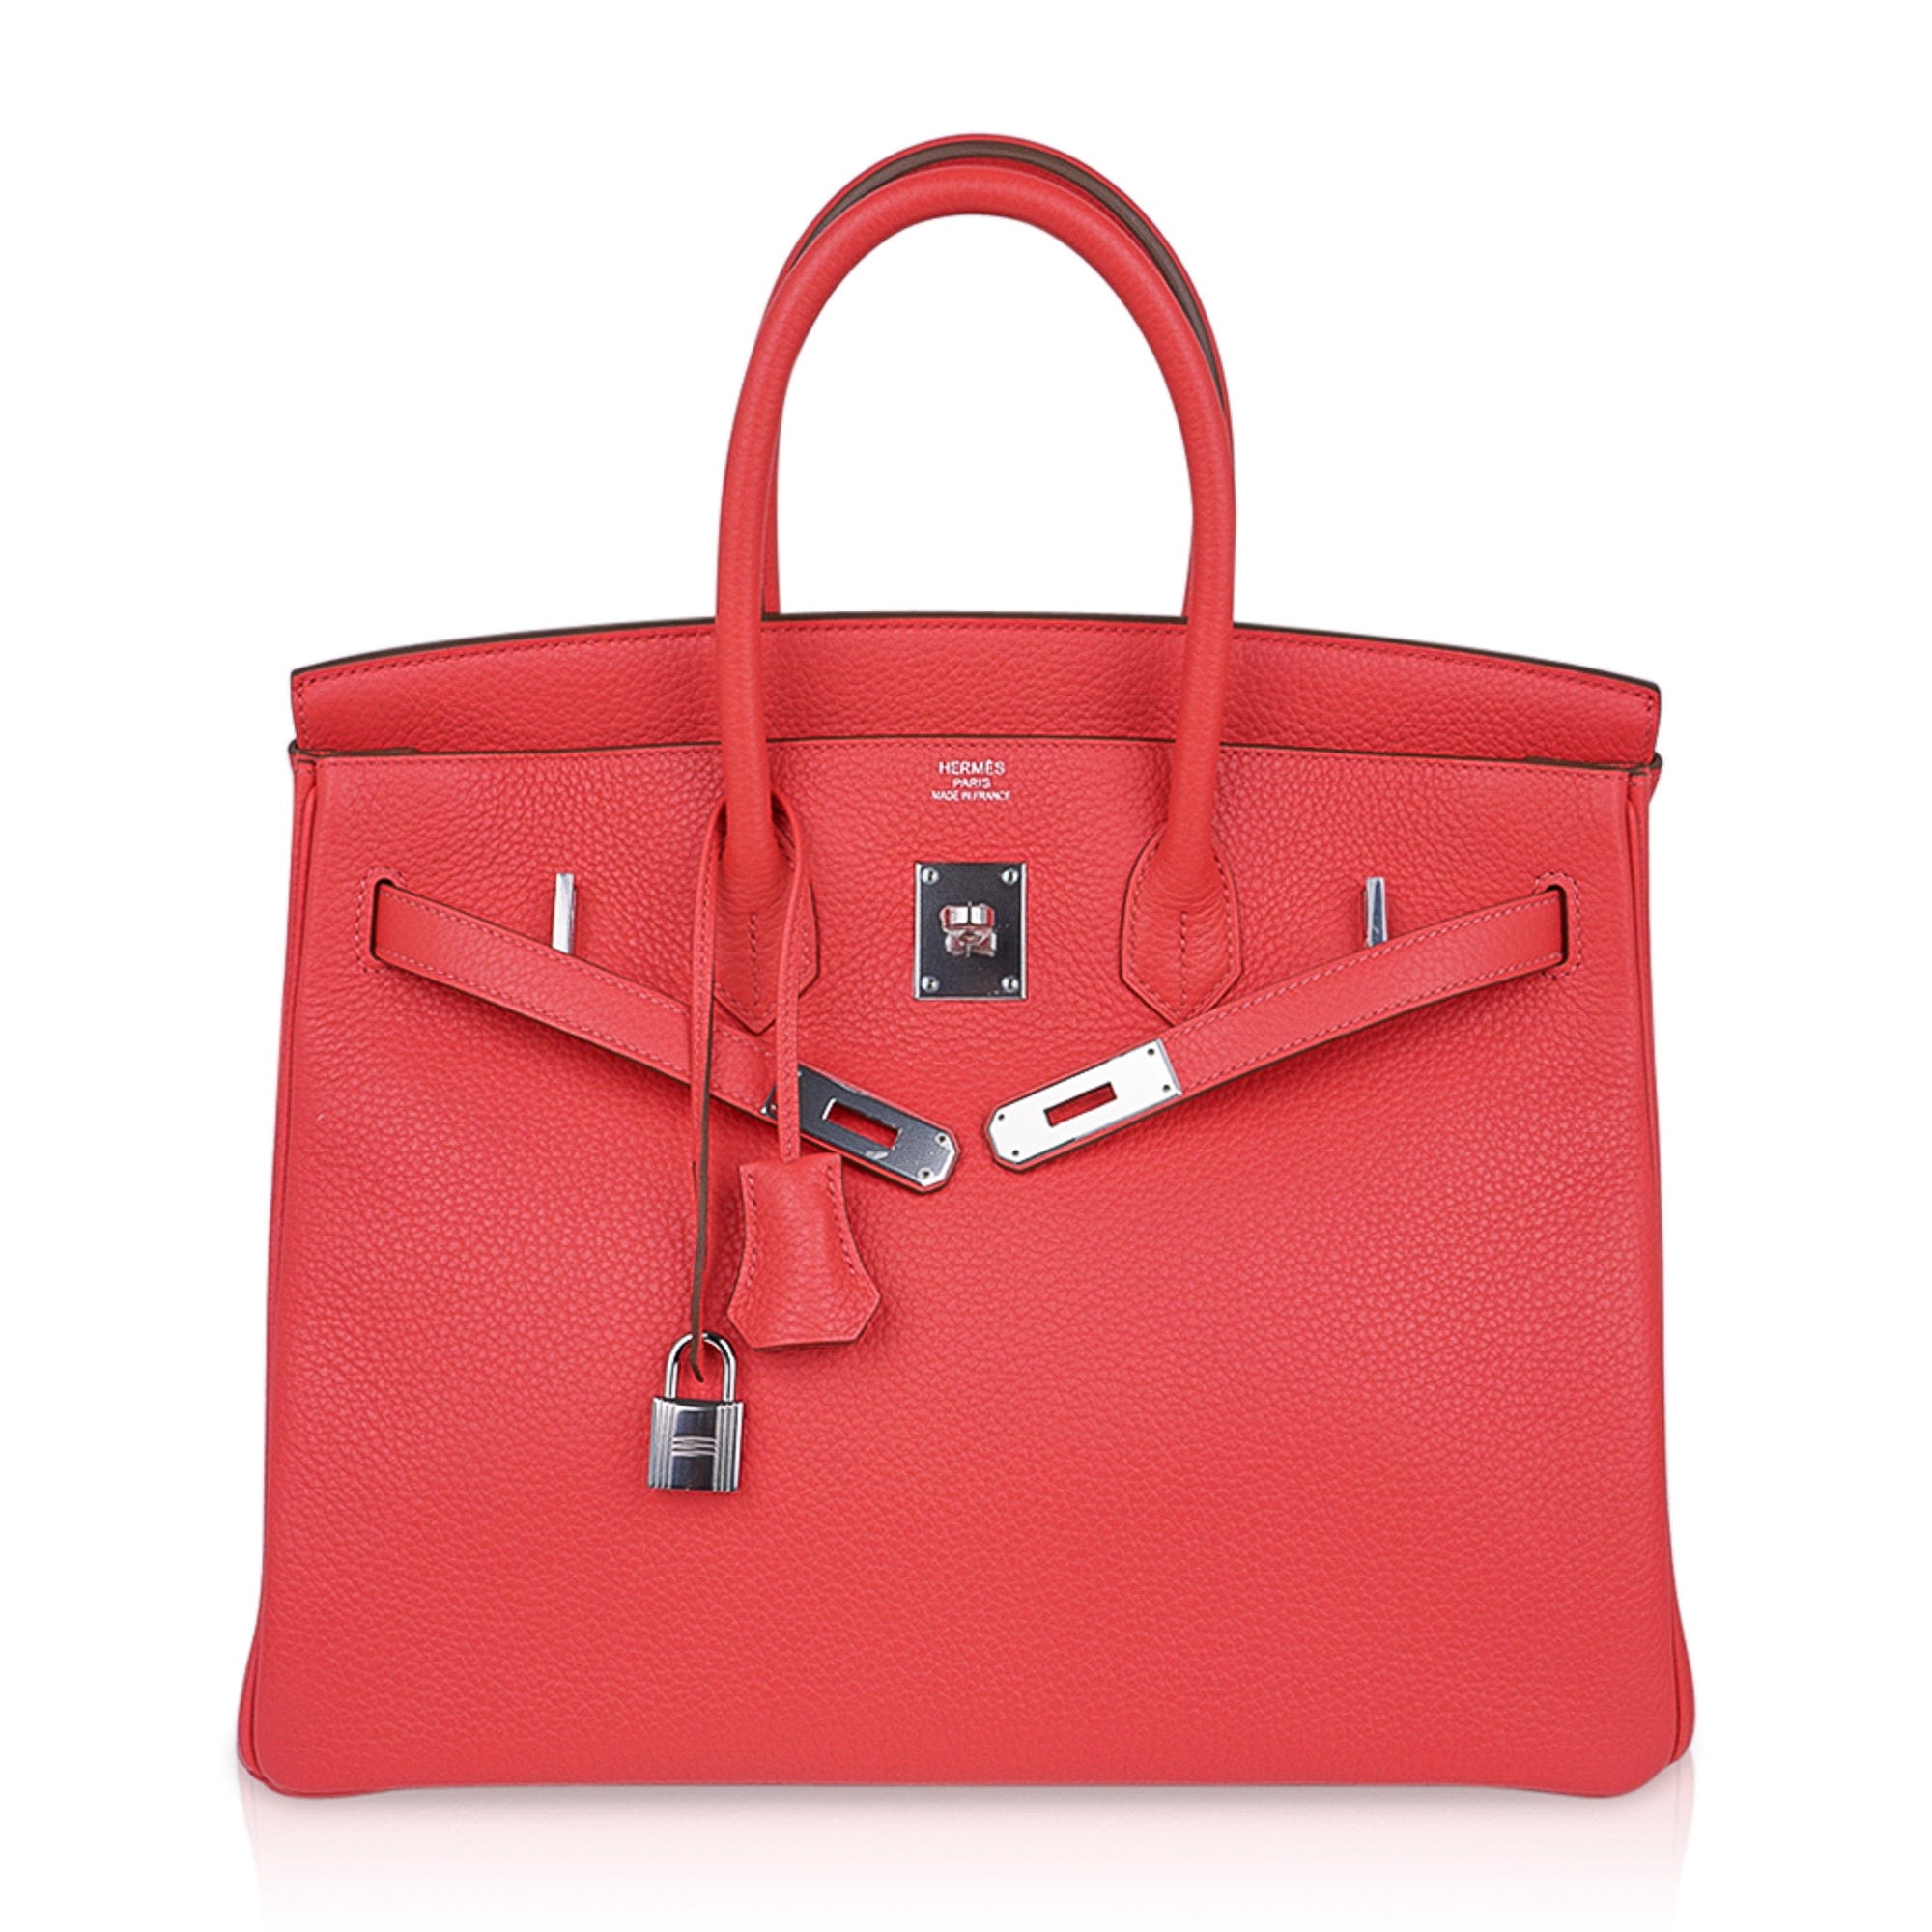 Hermes Birkin 35 Bag - Red Rose Paris